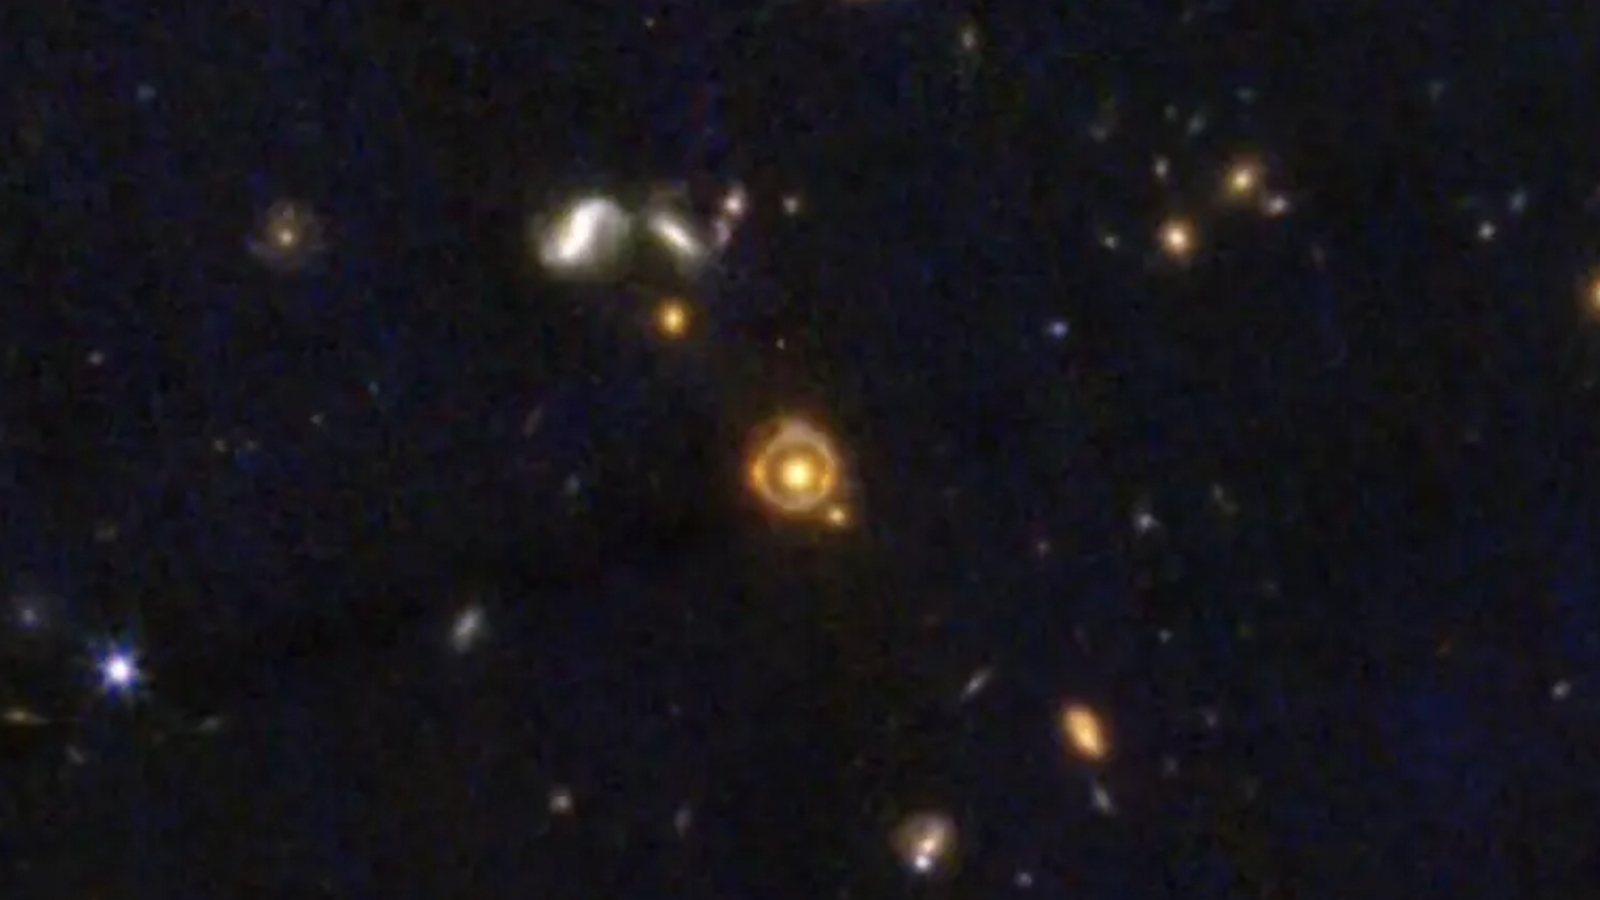 Prstenec oranžového světla obklopuje žlutou galaxii ve středu snímku plného hvězd